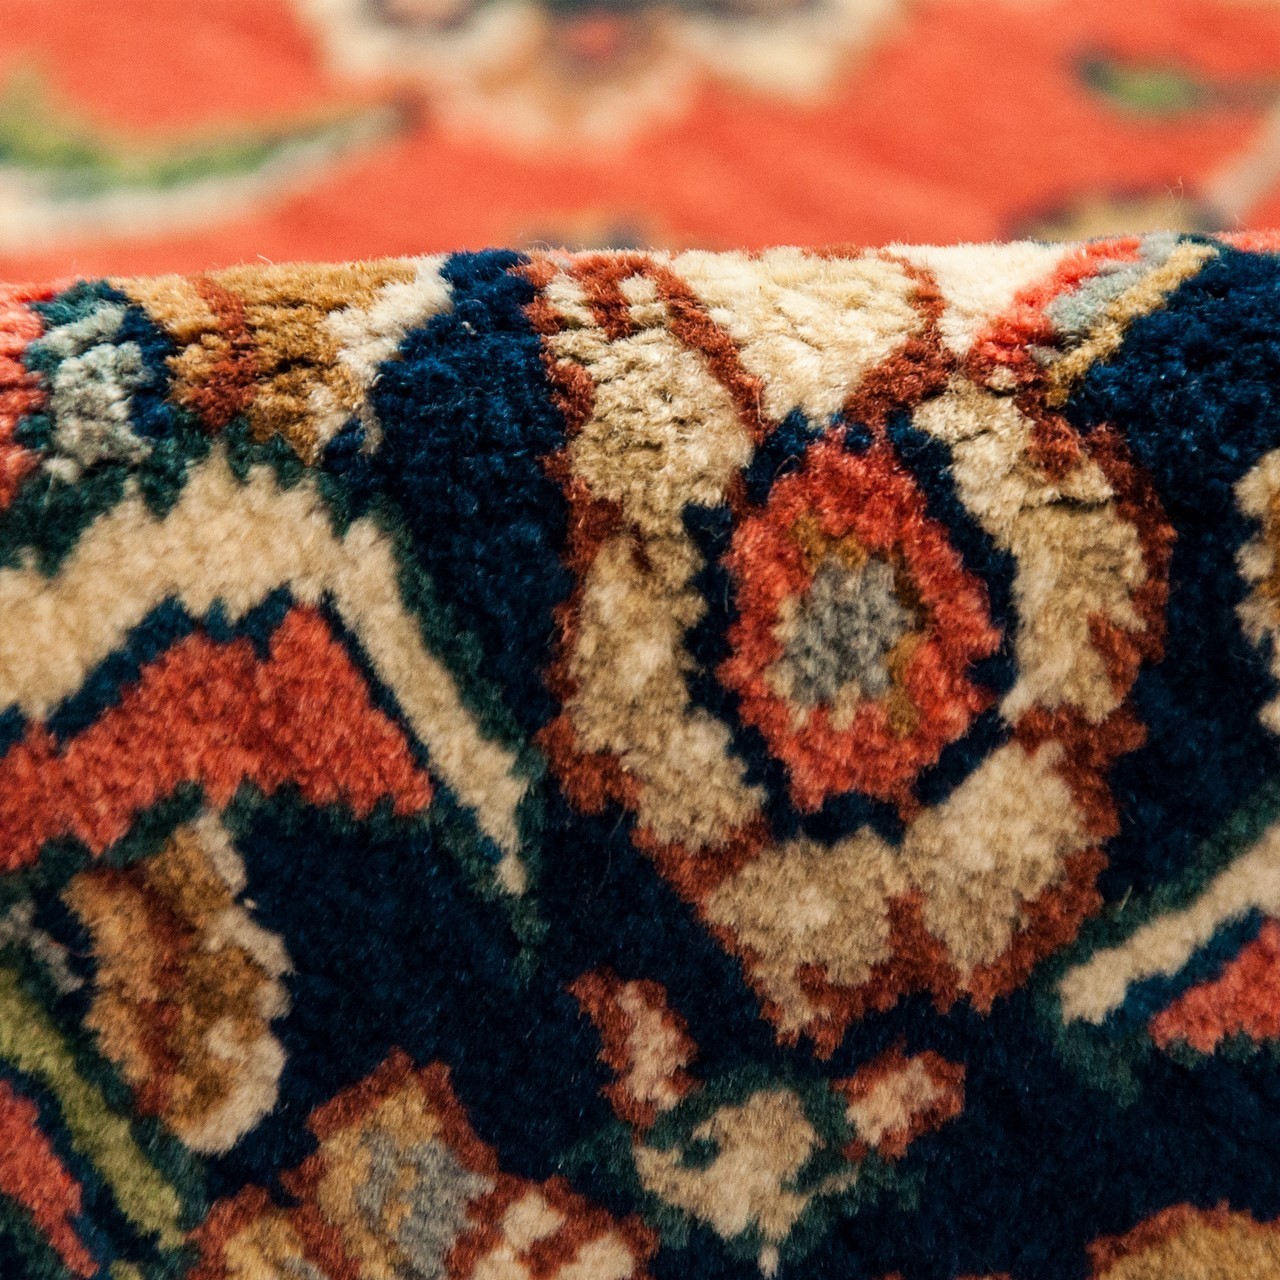 Ferahan Carpet Ref 101991